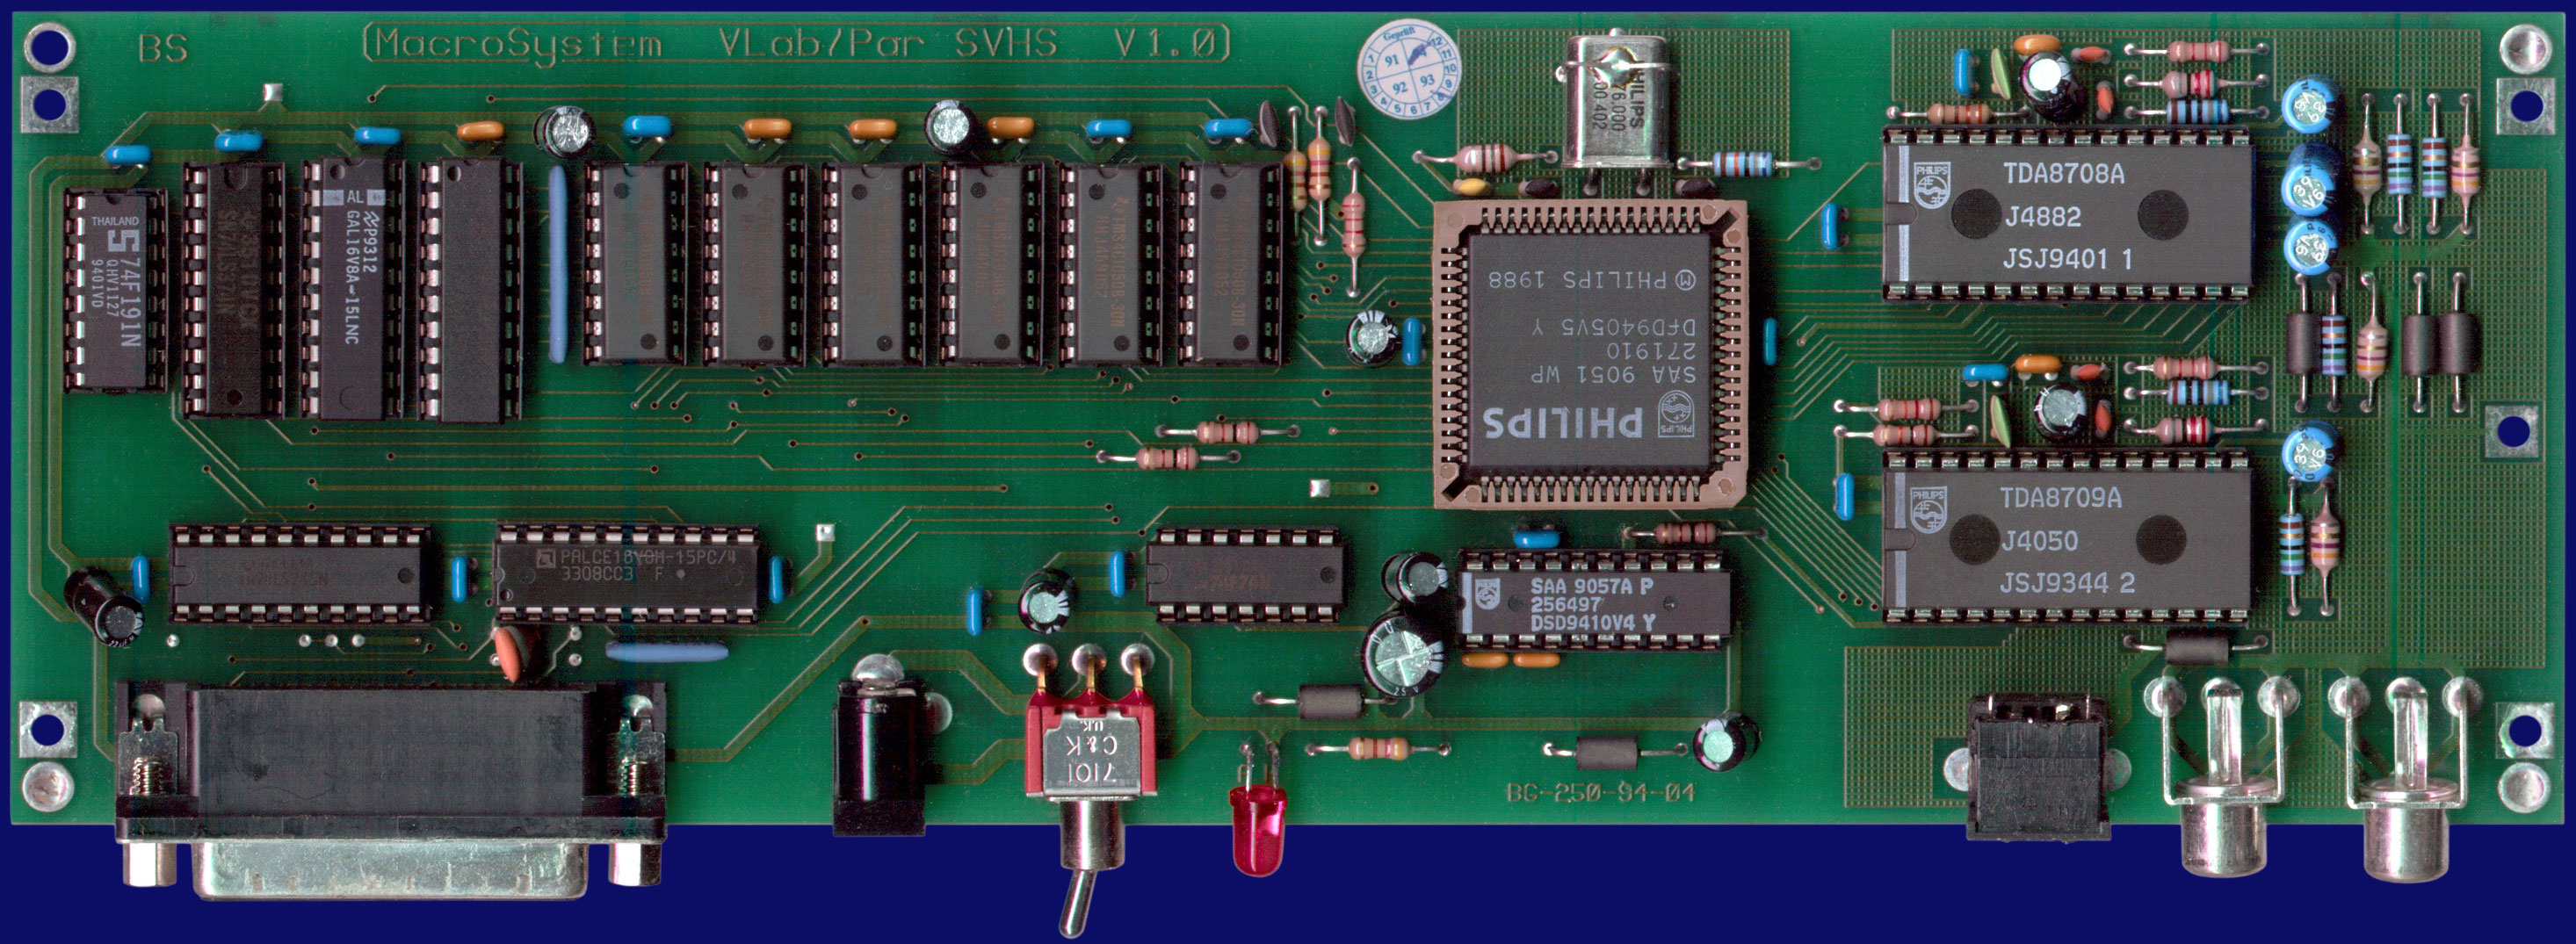 MacroSystem V-Lab/Par Y/C - PCB, front side